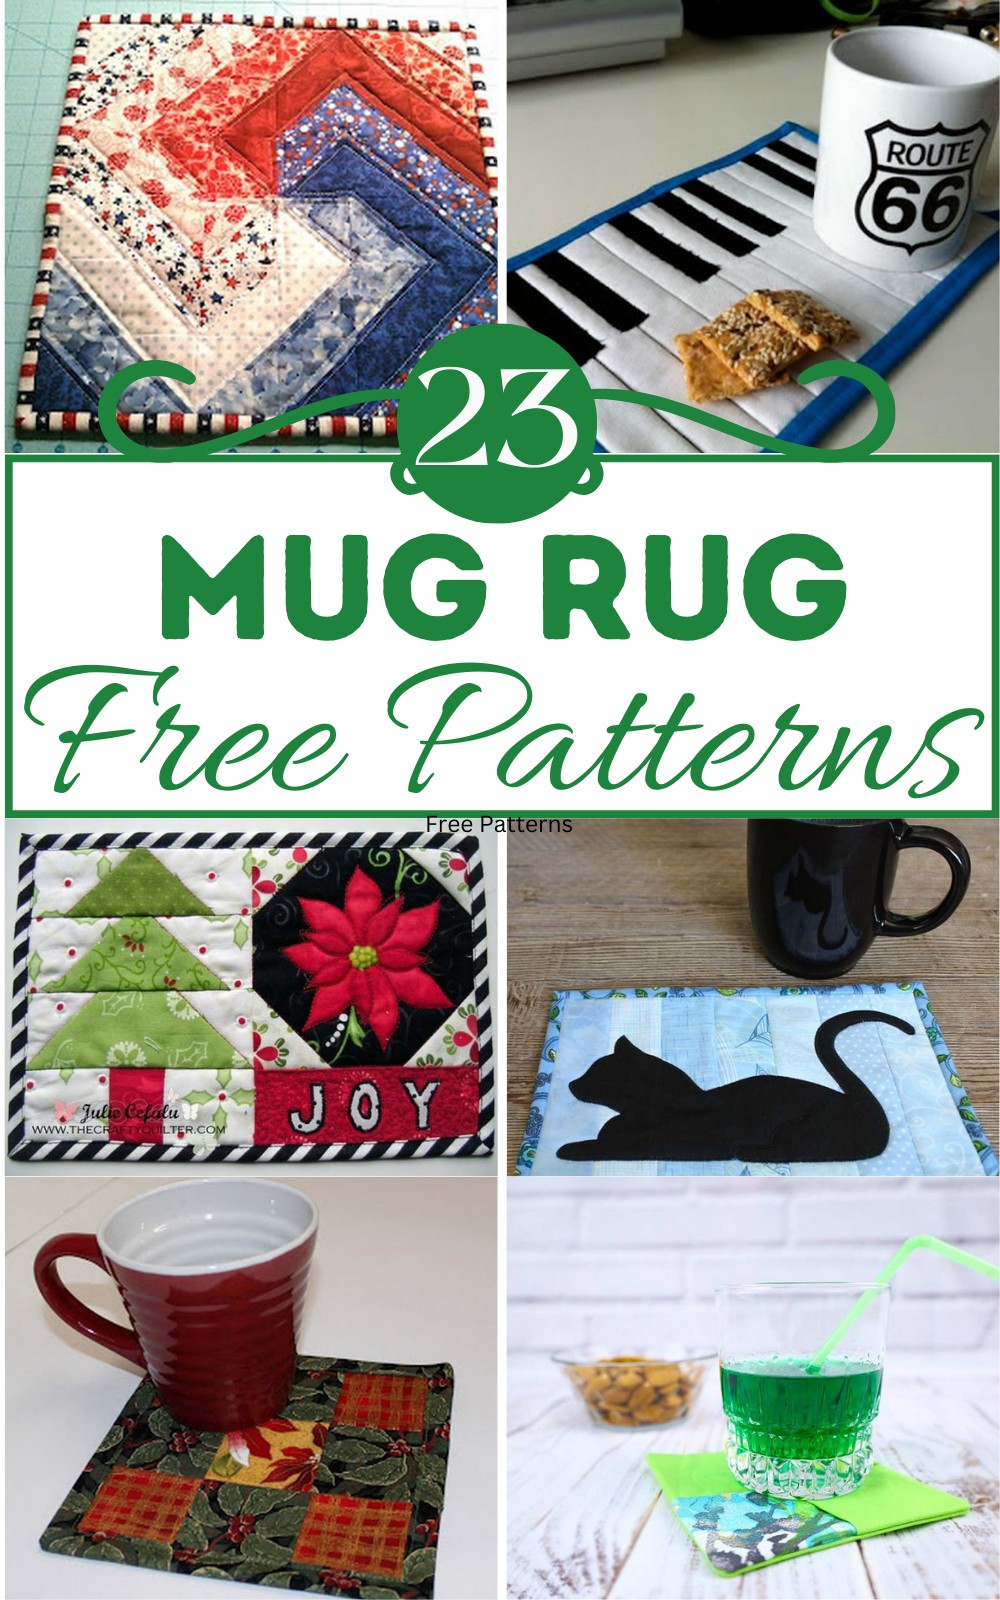 Free Mug Rug Patterns 1